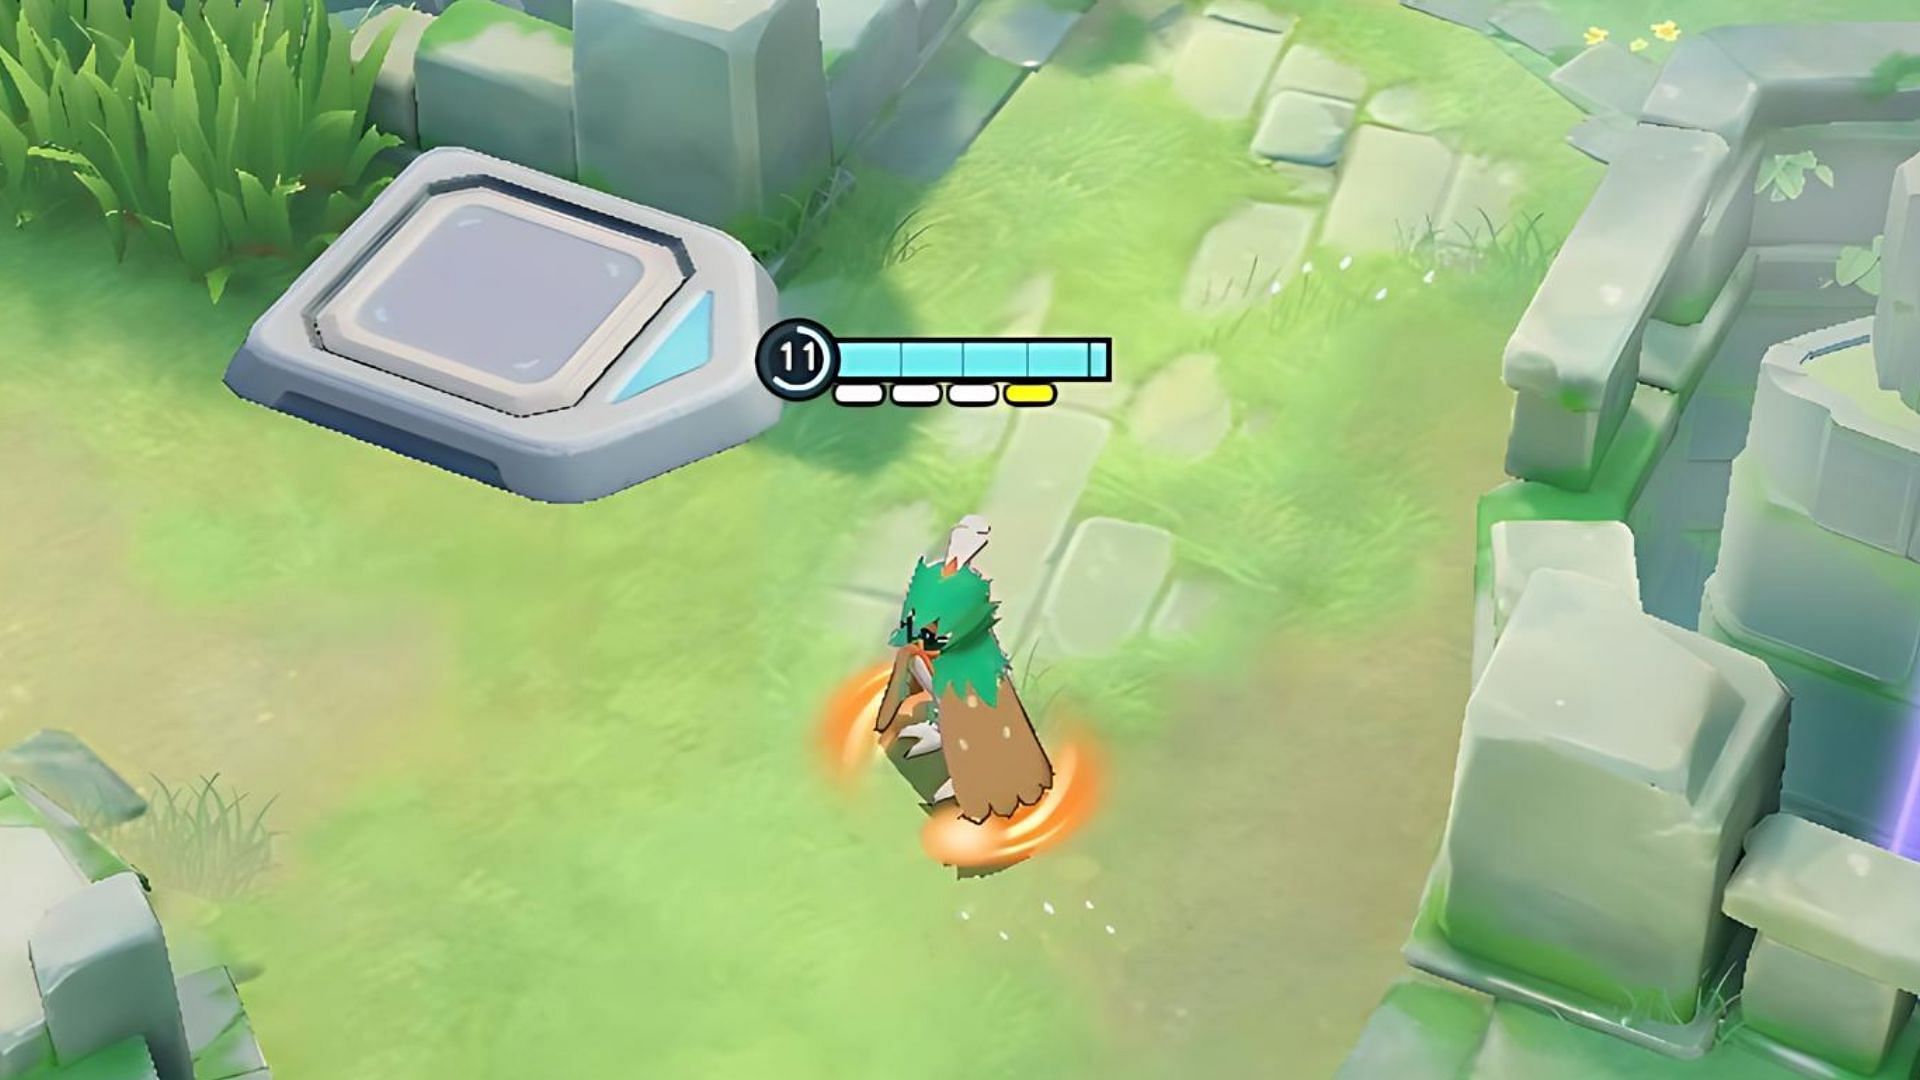 L'indicatore di attacco potenziato si trova sotto la barra della salute nel gioco (Immagine tramite The Pokemon Company)